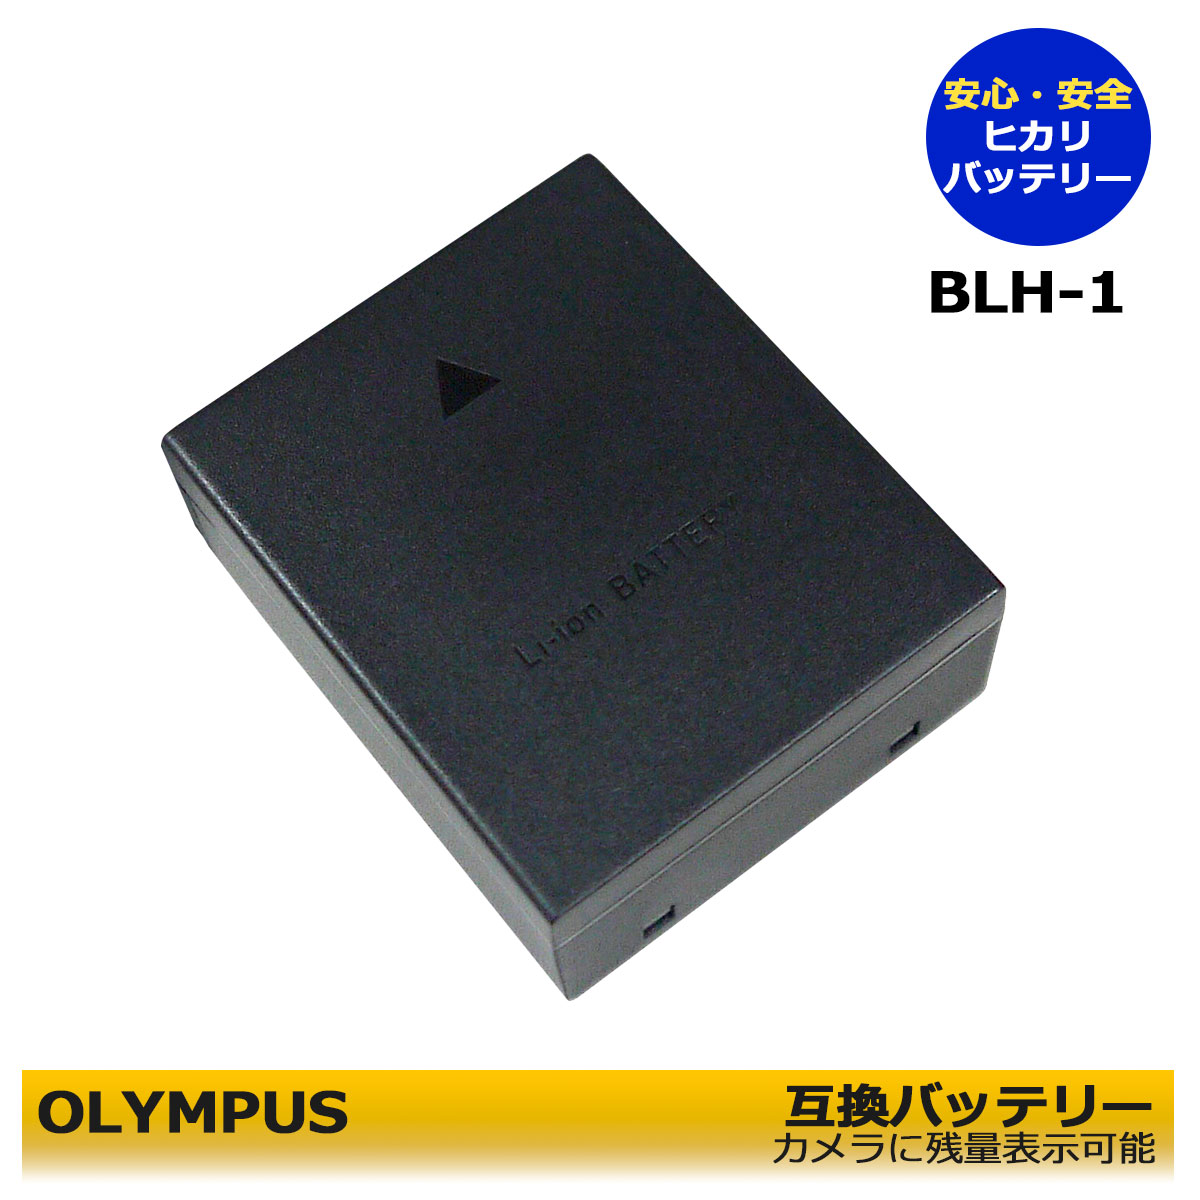 【楽天市場】【あす楽対応】OLYMPUS オリンパス BLH-1 互換USB 